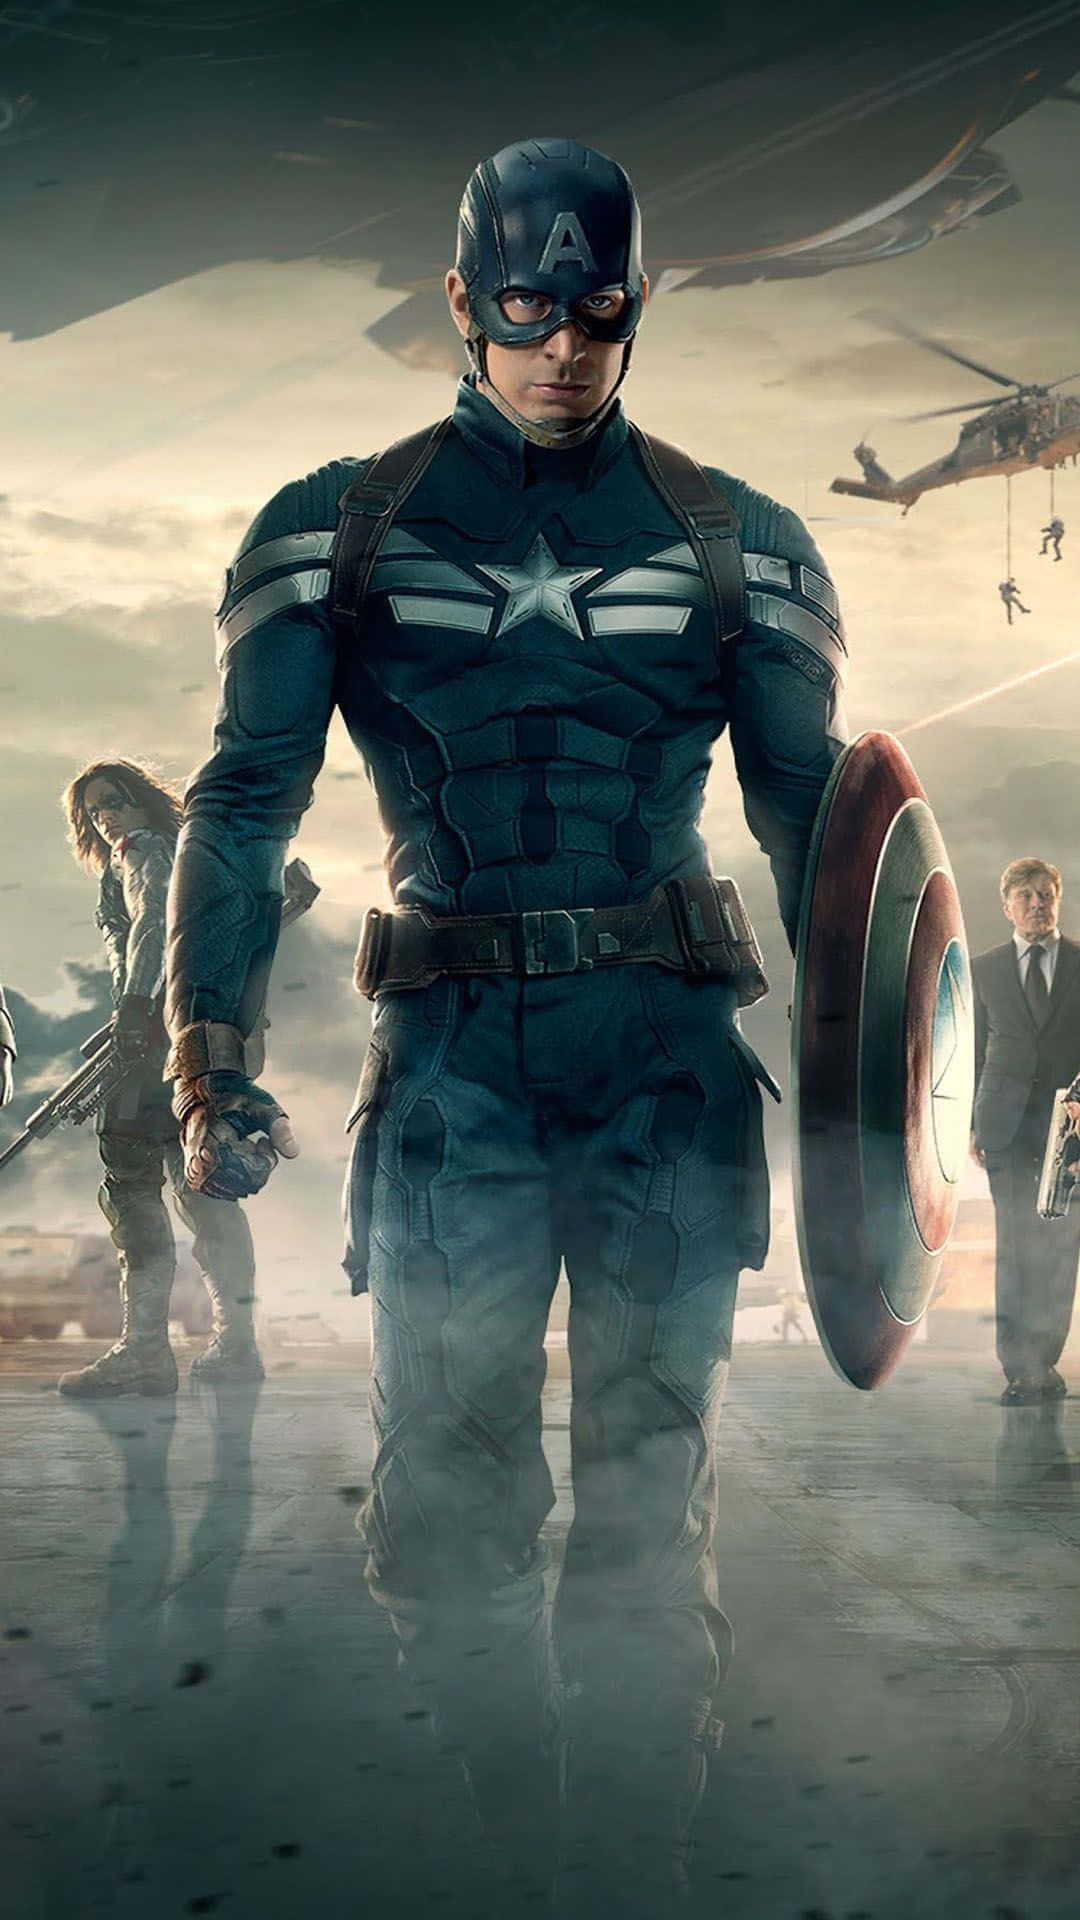 Gördig Redo För Spännande Äventyr Med Captain America.